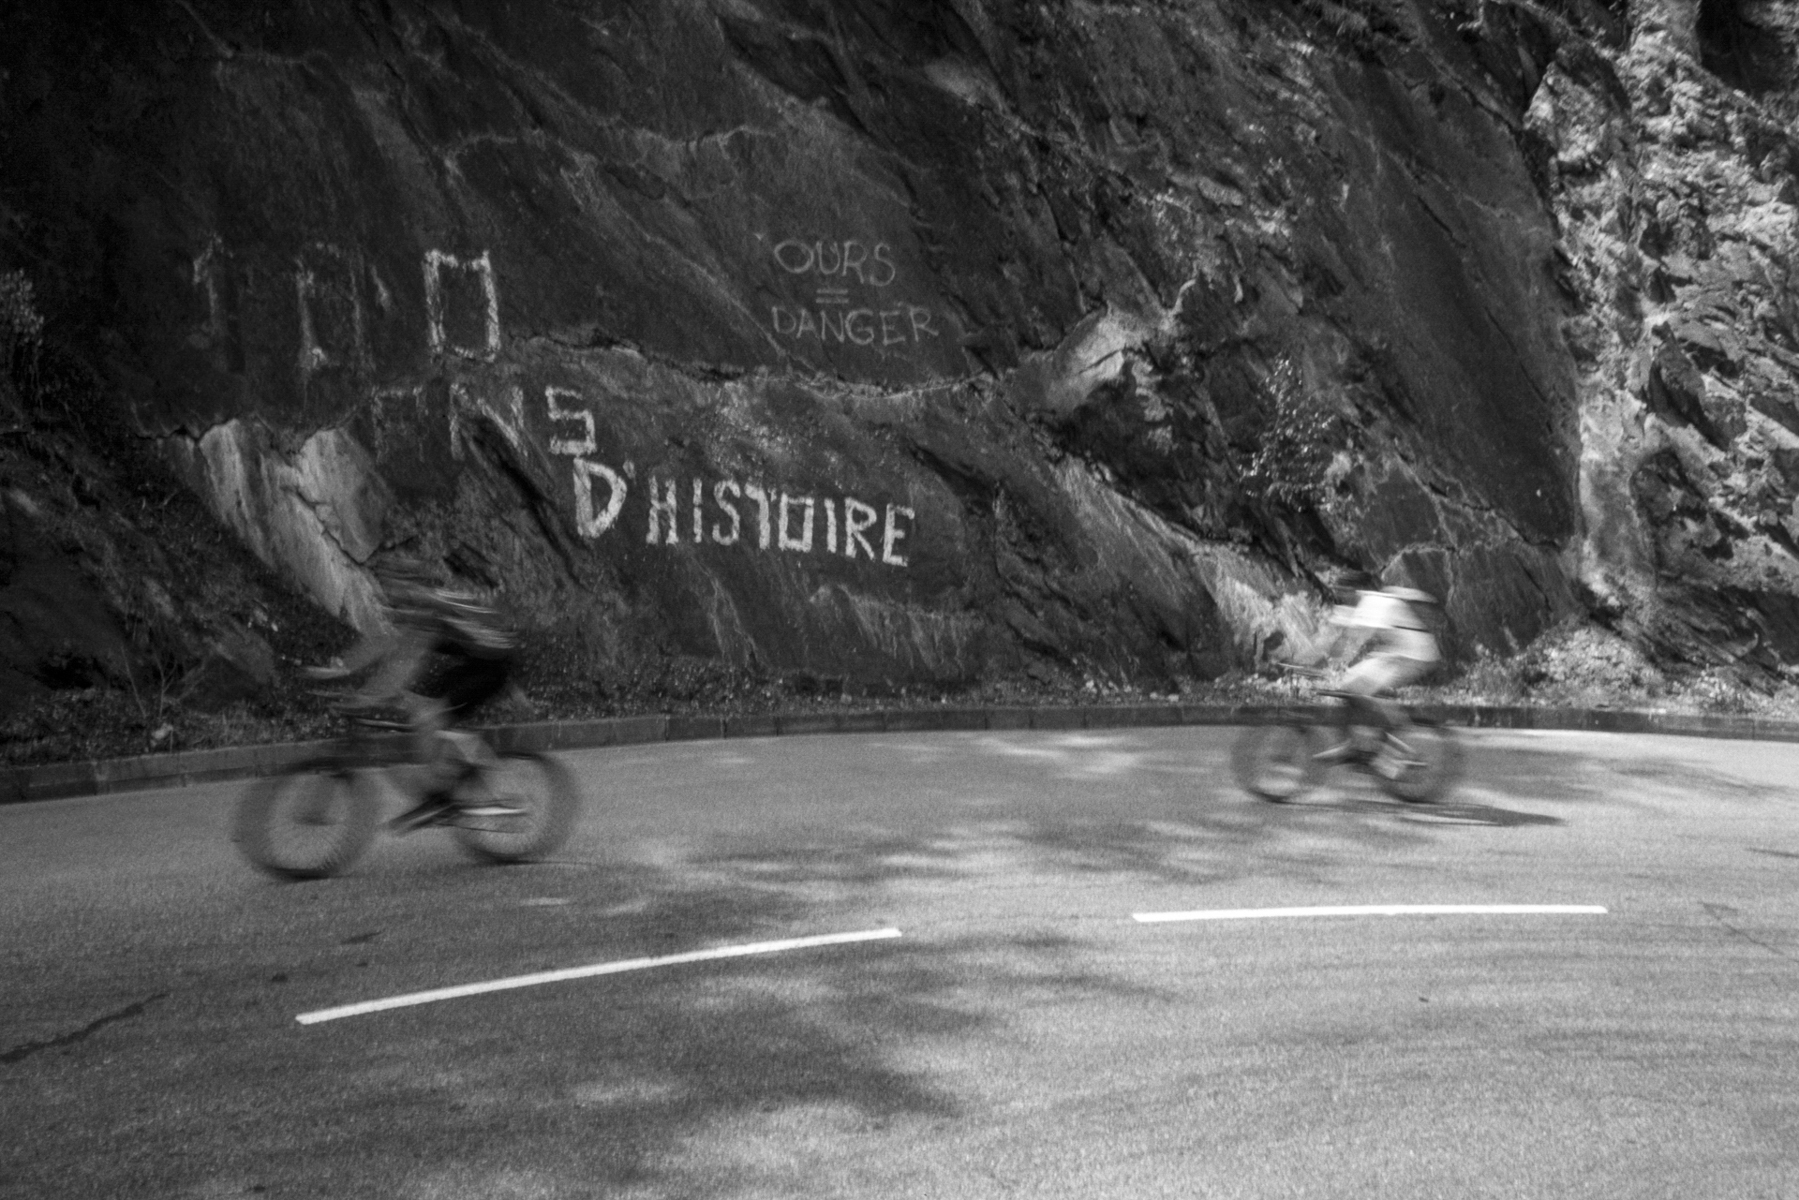 Tour de France 2005: Aix-3 Domaines